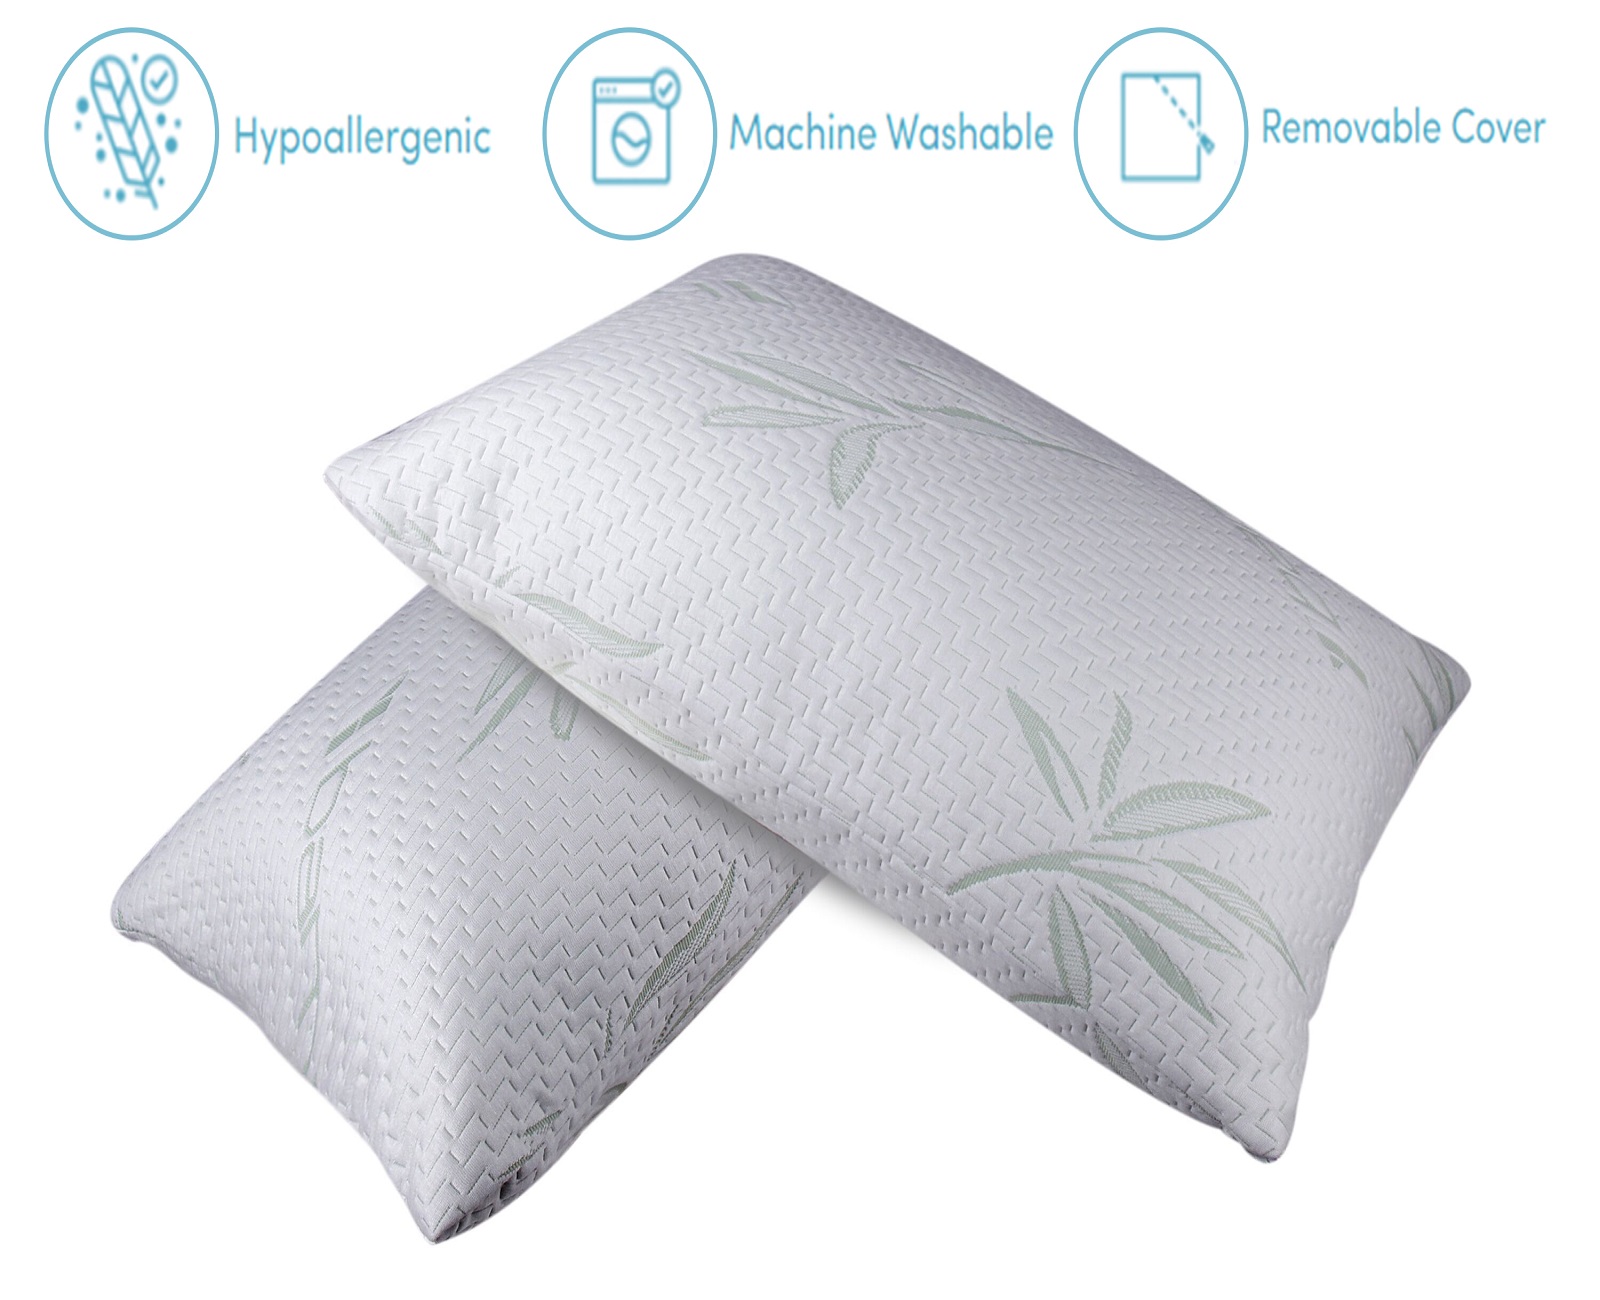 Sleepsia Bamboo Pillow Shredded Memory Foam Bed Pillow for Side